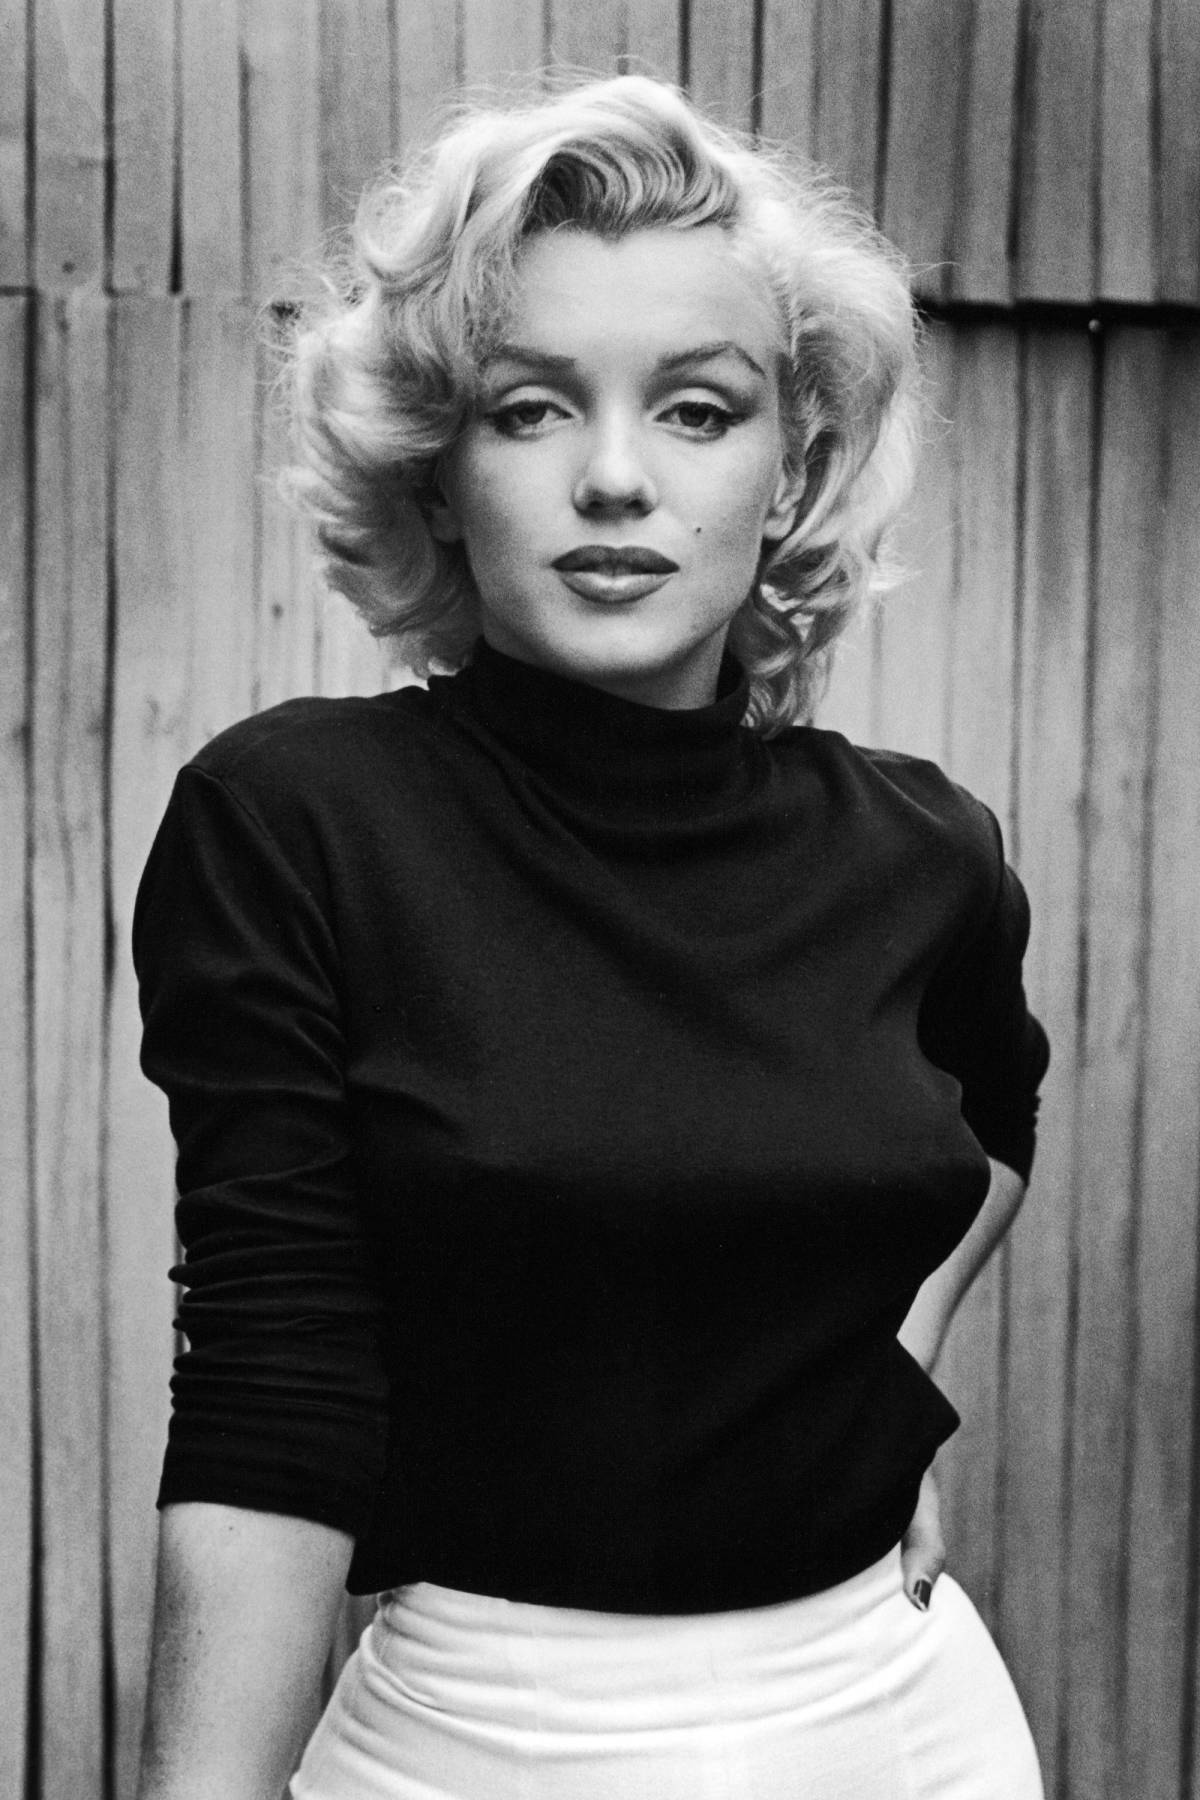 Free Marilyn Monroe Wallpaper Downloads, Marilyn Monroe Wallpaper for FREE